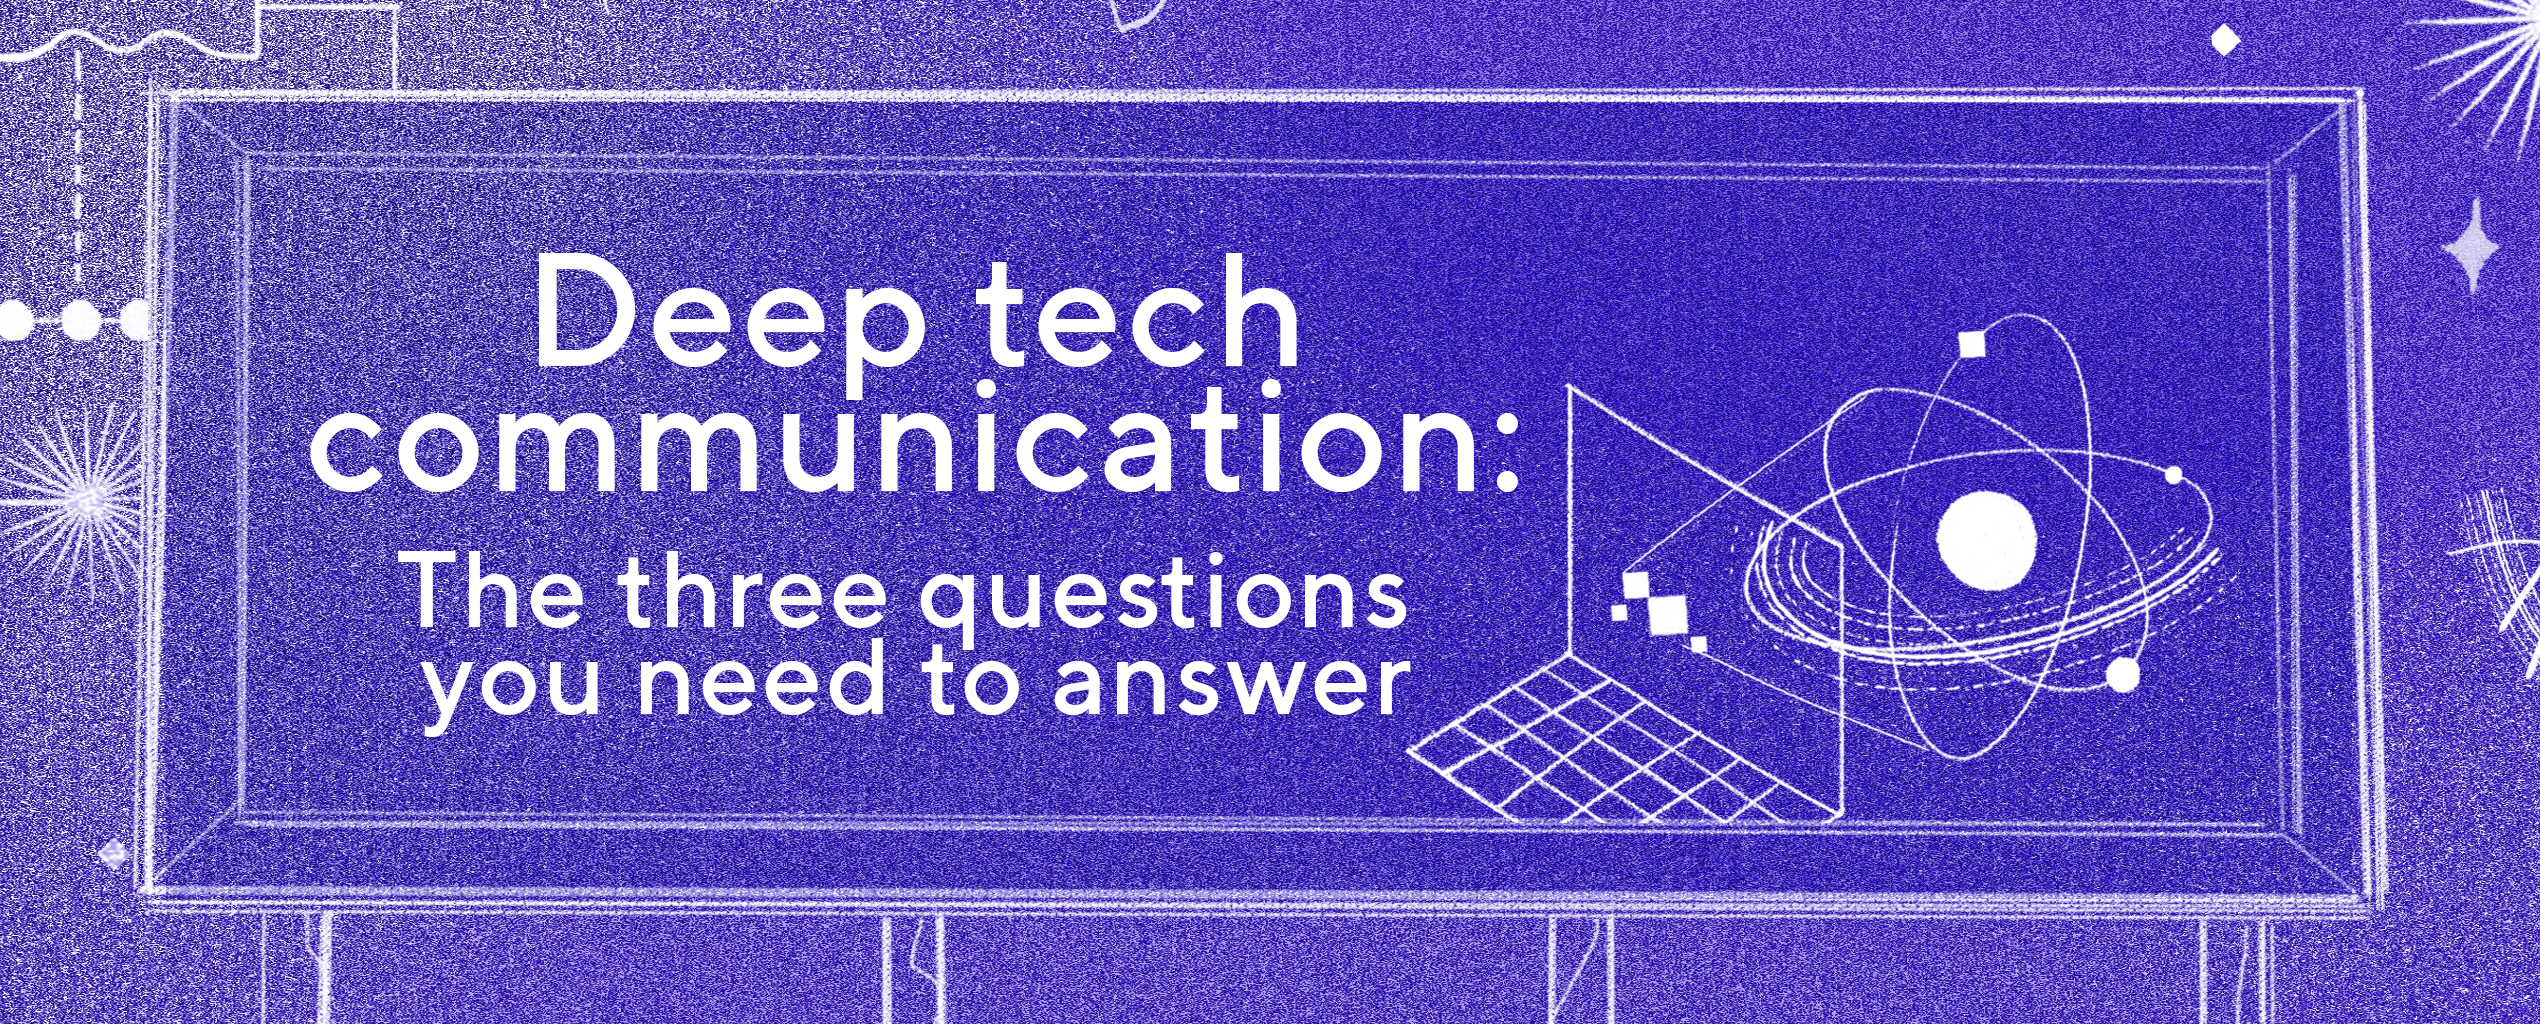 Diepe technologiecommunicatie: de drie vragen die je moet beantwoorden